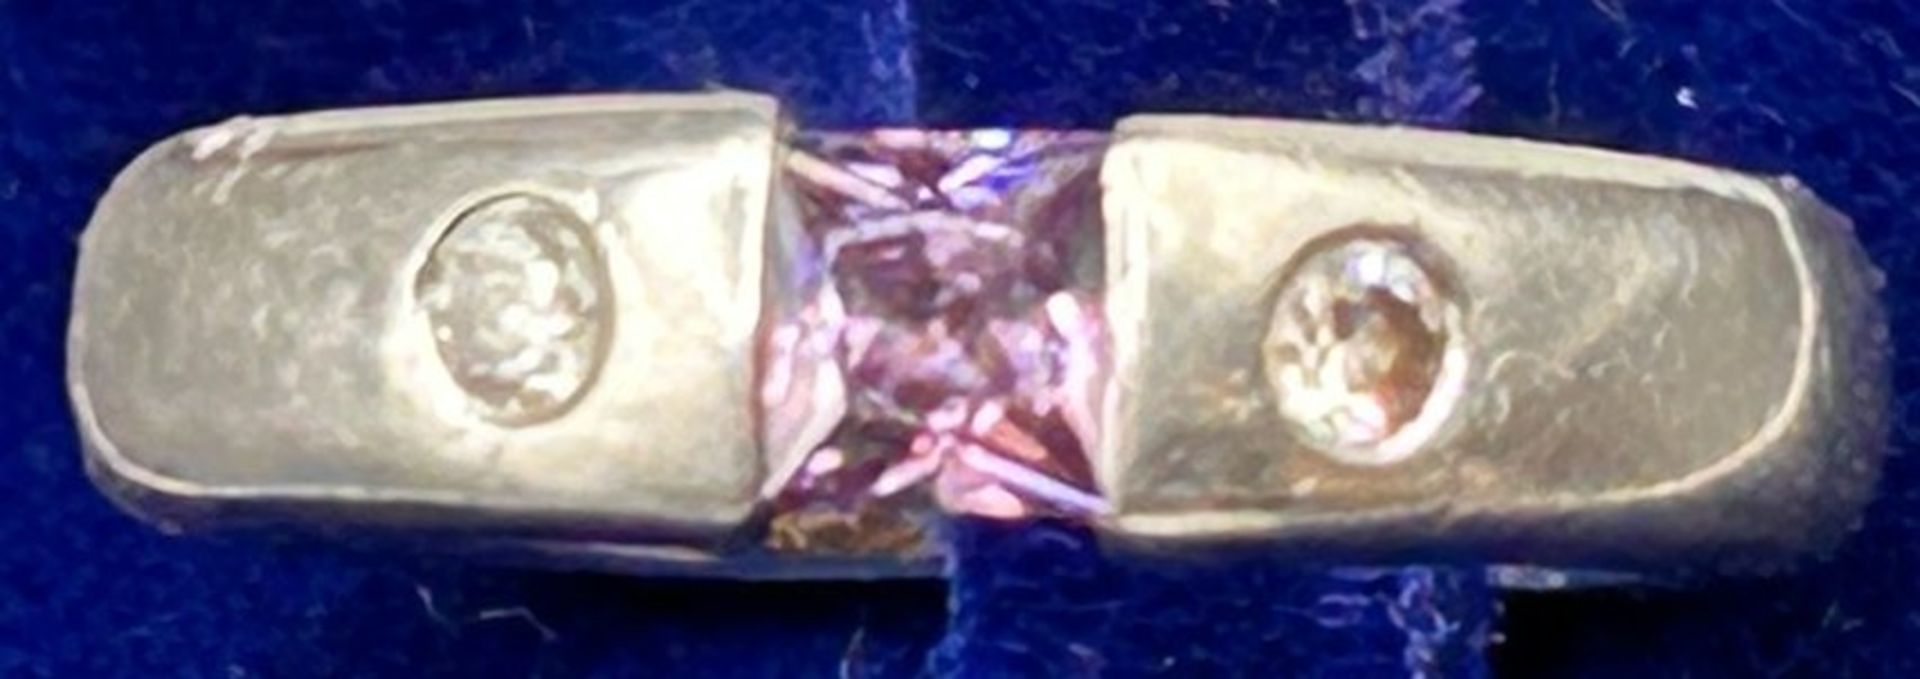 Silber-Spannring mit rosa Stein, 2 klare Steine, -925-RG 57, 6,9 gr. - Bild 2 aus 3